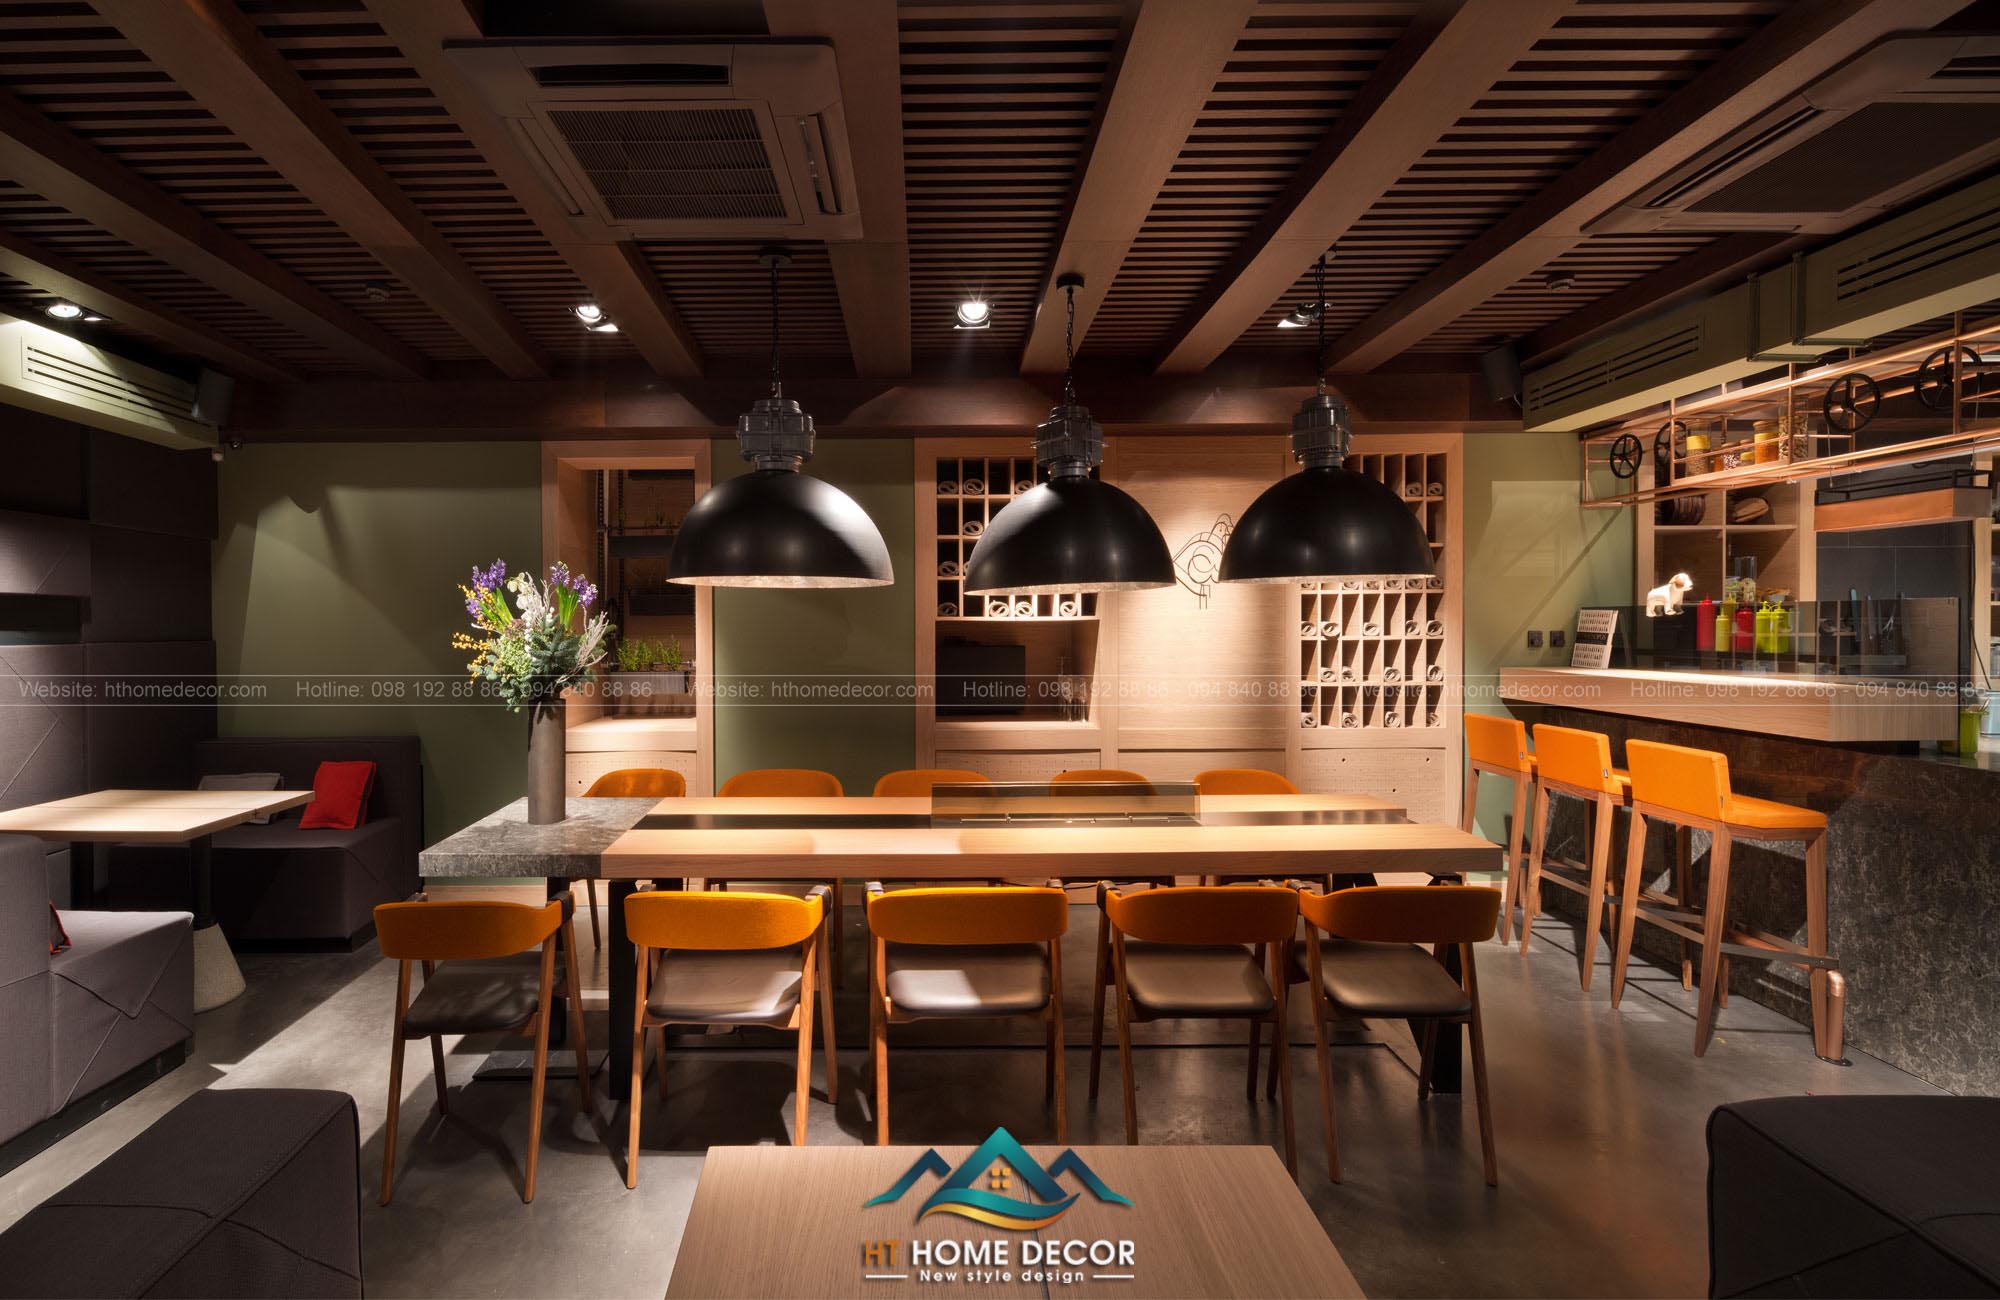 Ở một gian phòng khác, trên trần được sử dụng 100% gỗ để  thiết kế, hệ thống máy lạnh được ẩn mình trong bộ gỗ quý phái.